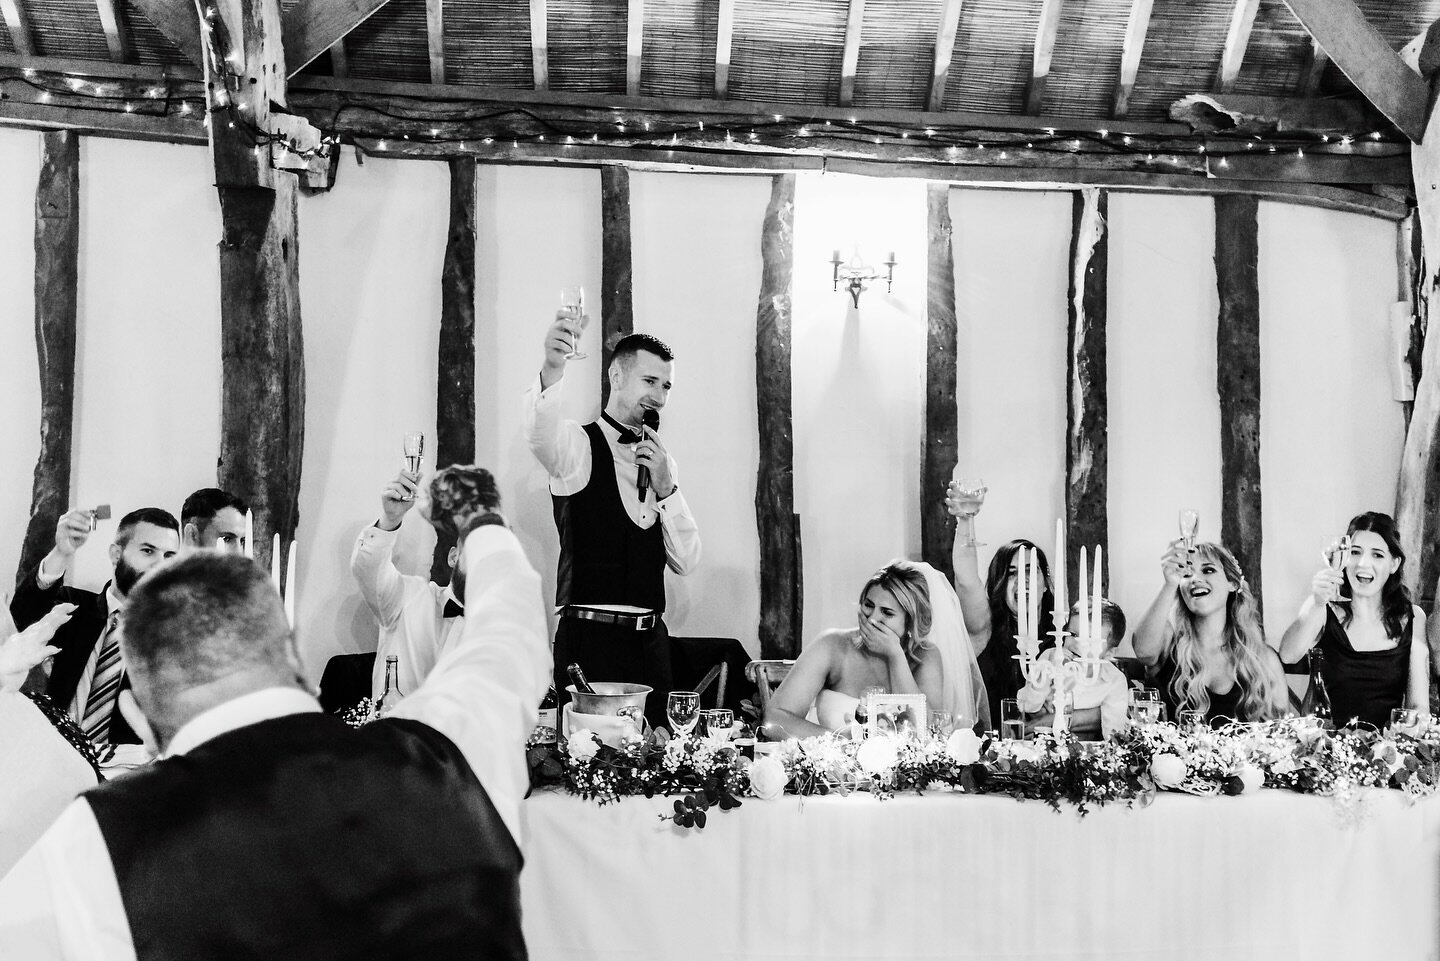 Magical wedding moment at the @notleytythebarn in Buckinghamshire. ✨

#ukweddings #ukweddingphotographer #yorkshireweddingphotographer #weddingphotographersociety #bridlingtonweddingphotographer #candidweddingphotographer
#naturalweddingphotography #